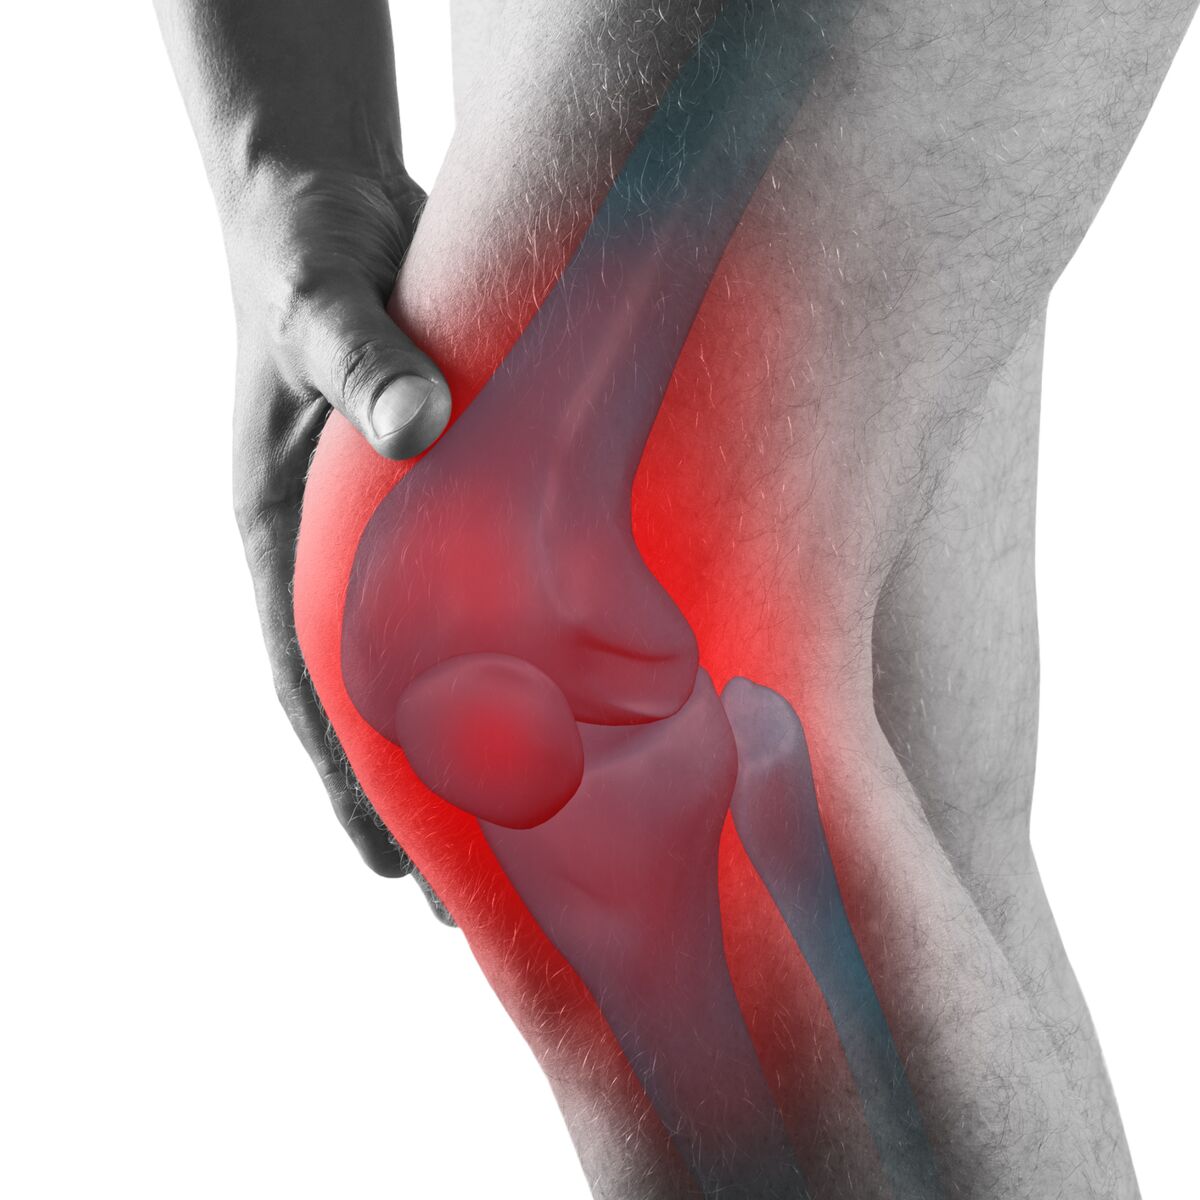 Arthrose du genou : un nouvel examen prometteur pour la